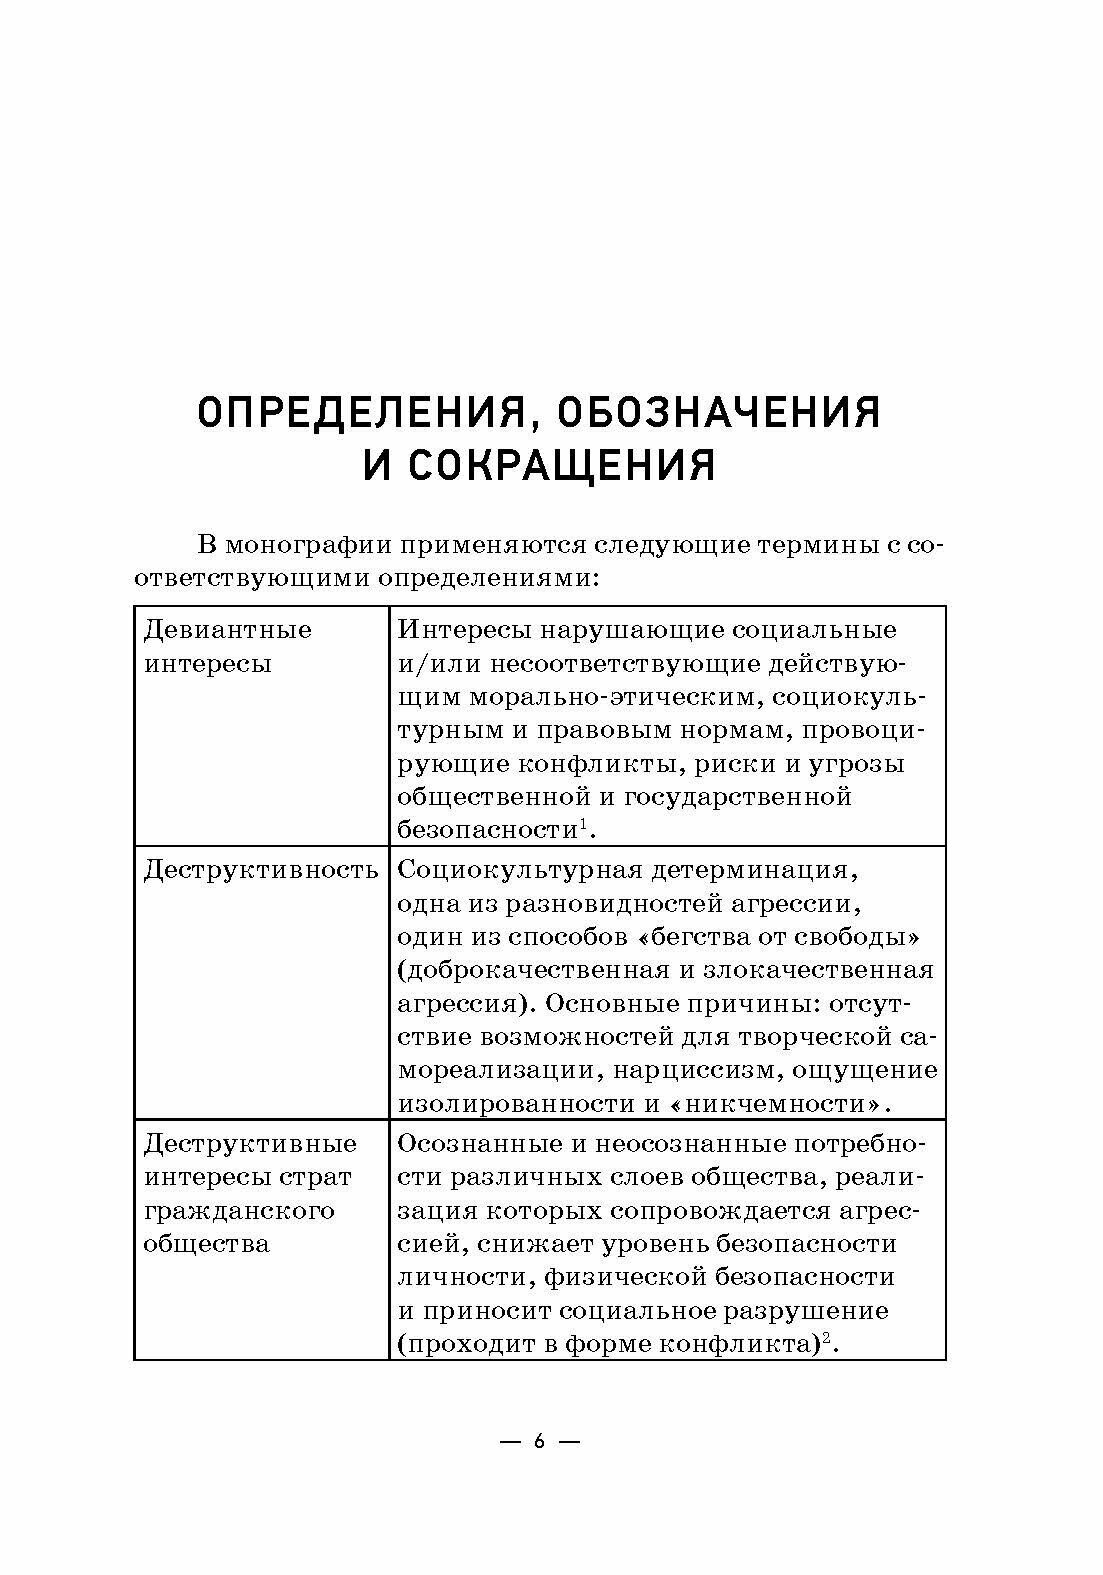 Согласование интересов страт современного российского гражданского общества - фото №10